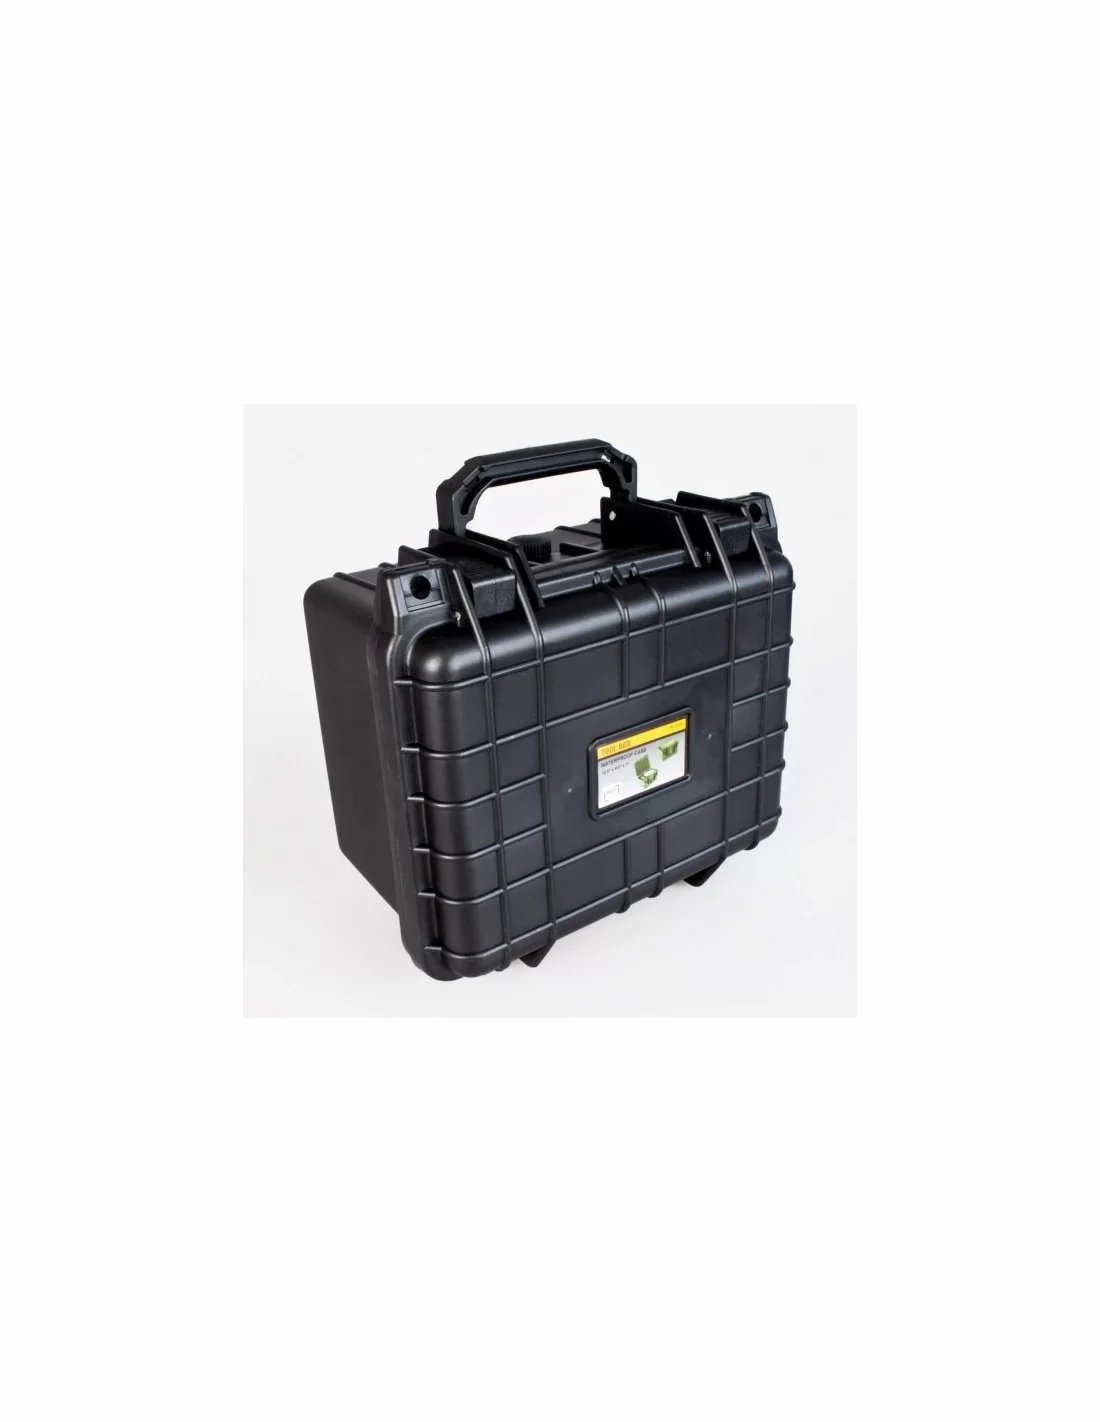 Fatbox VS55 херметически защитен куфар